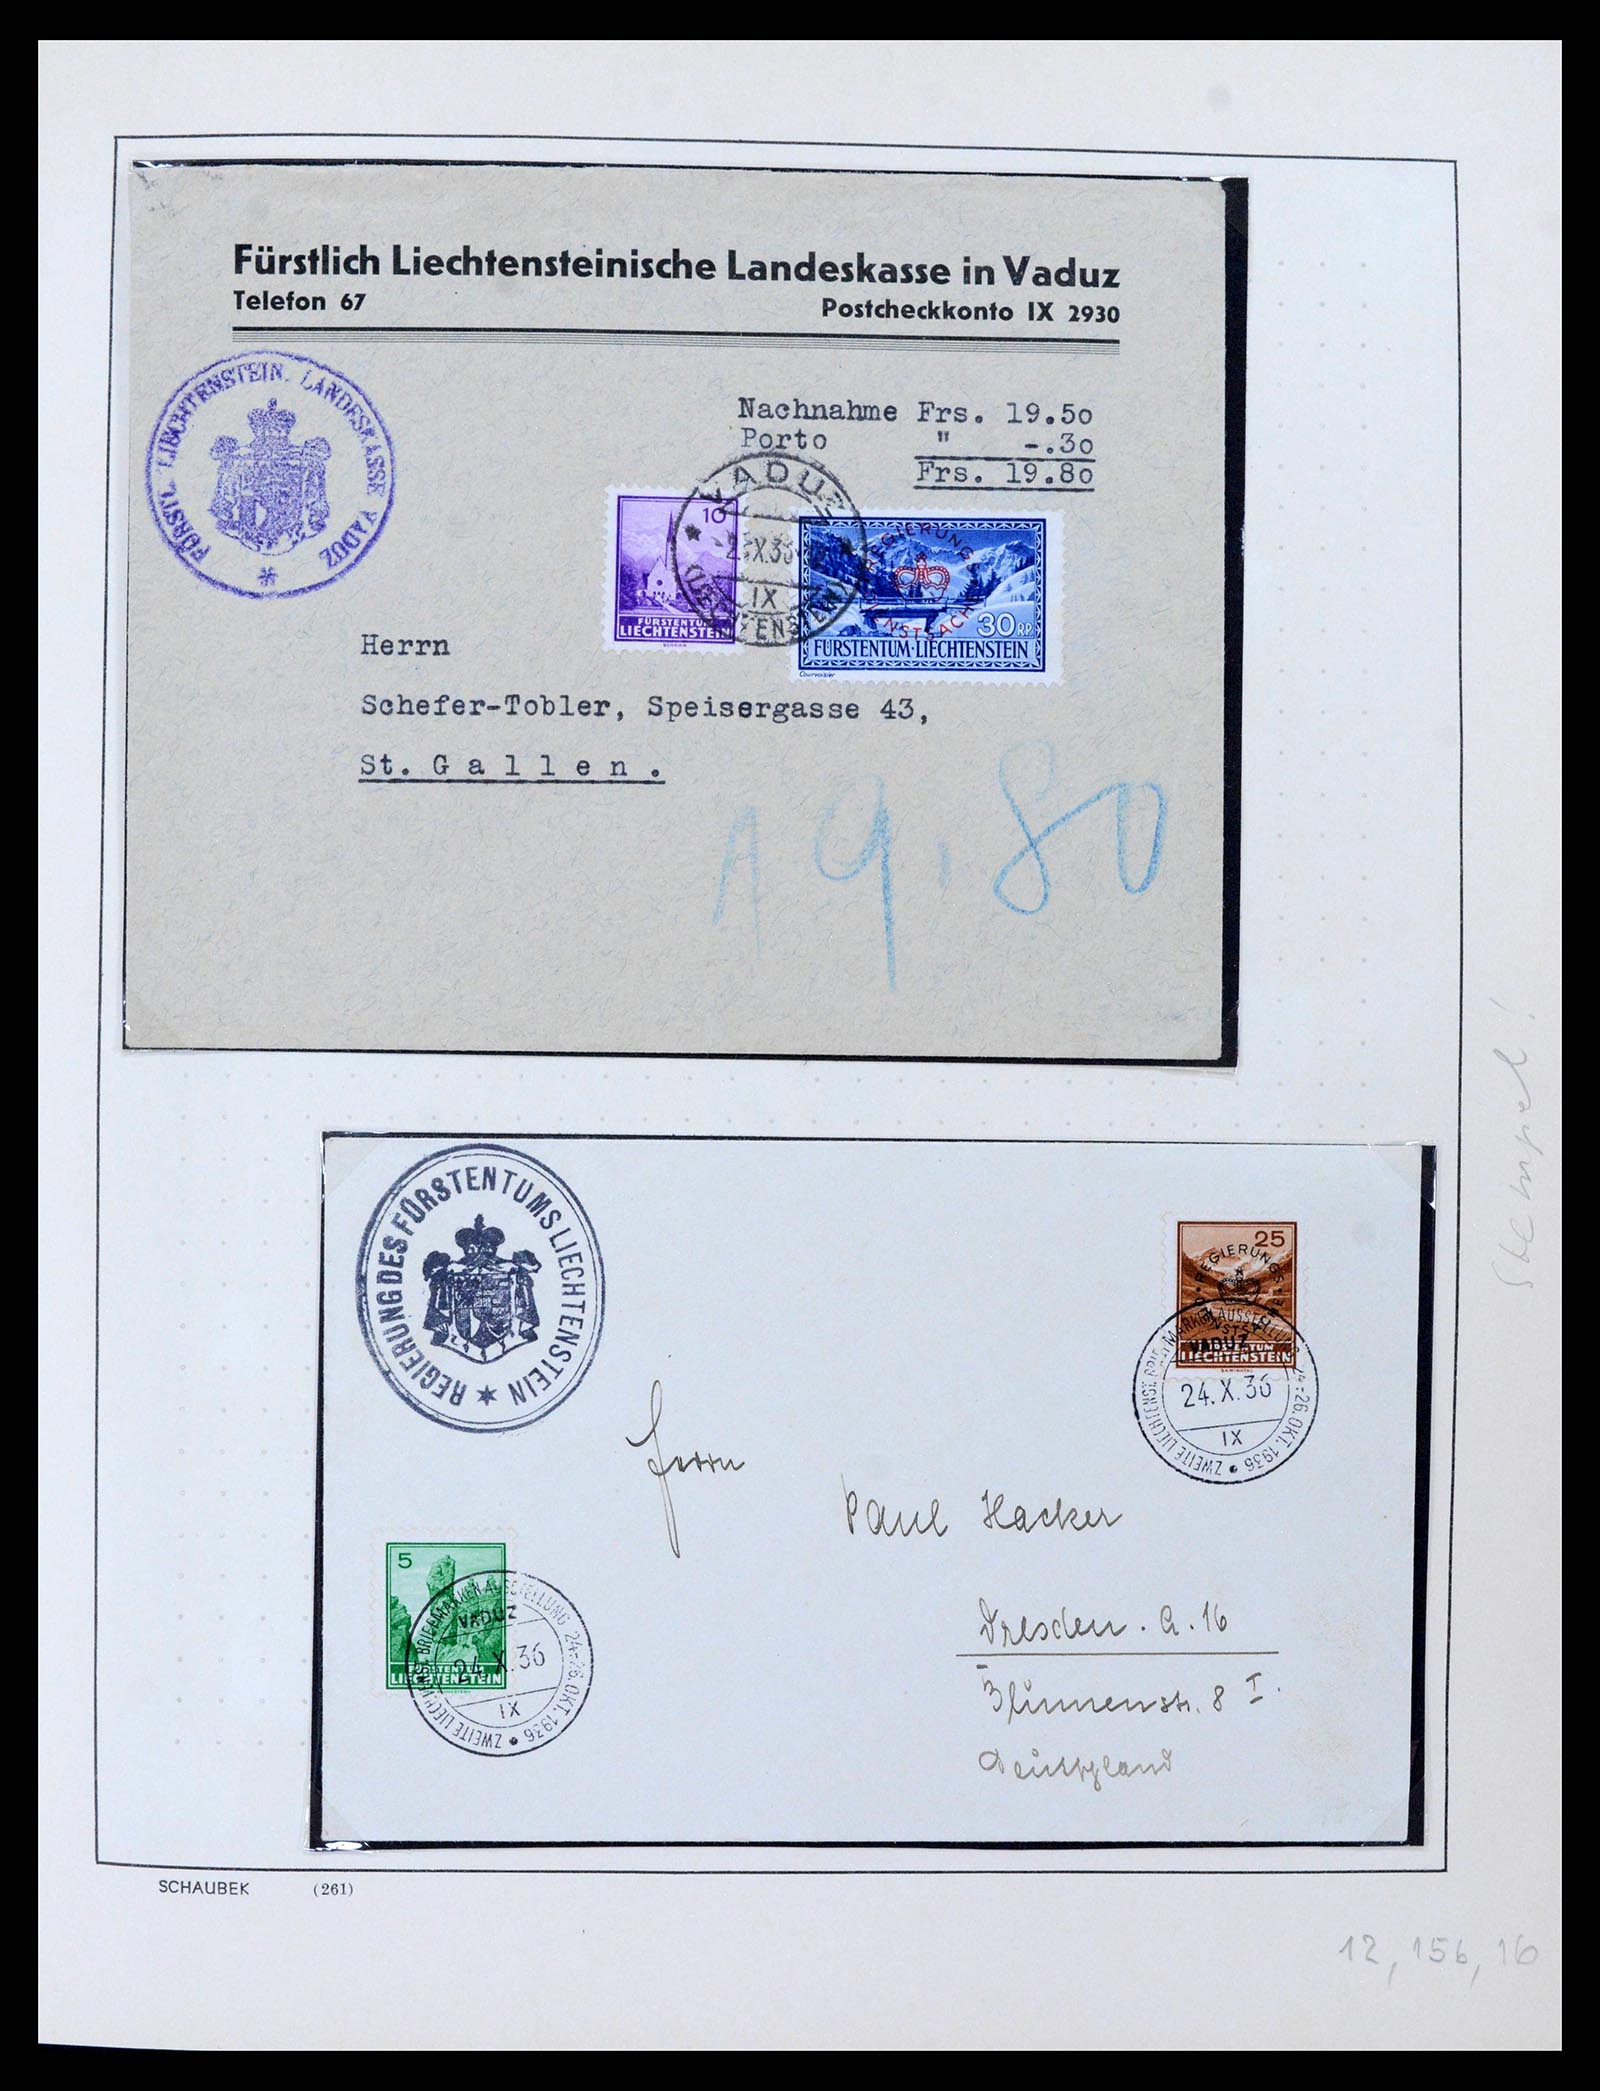 38204 0013 - Stamp collection 38204 Liechtenstein service covers 1932-1989.